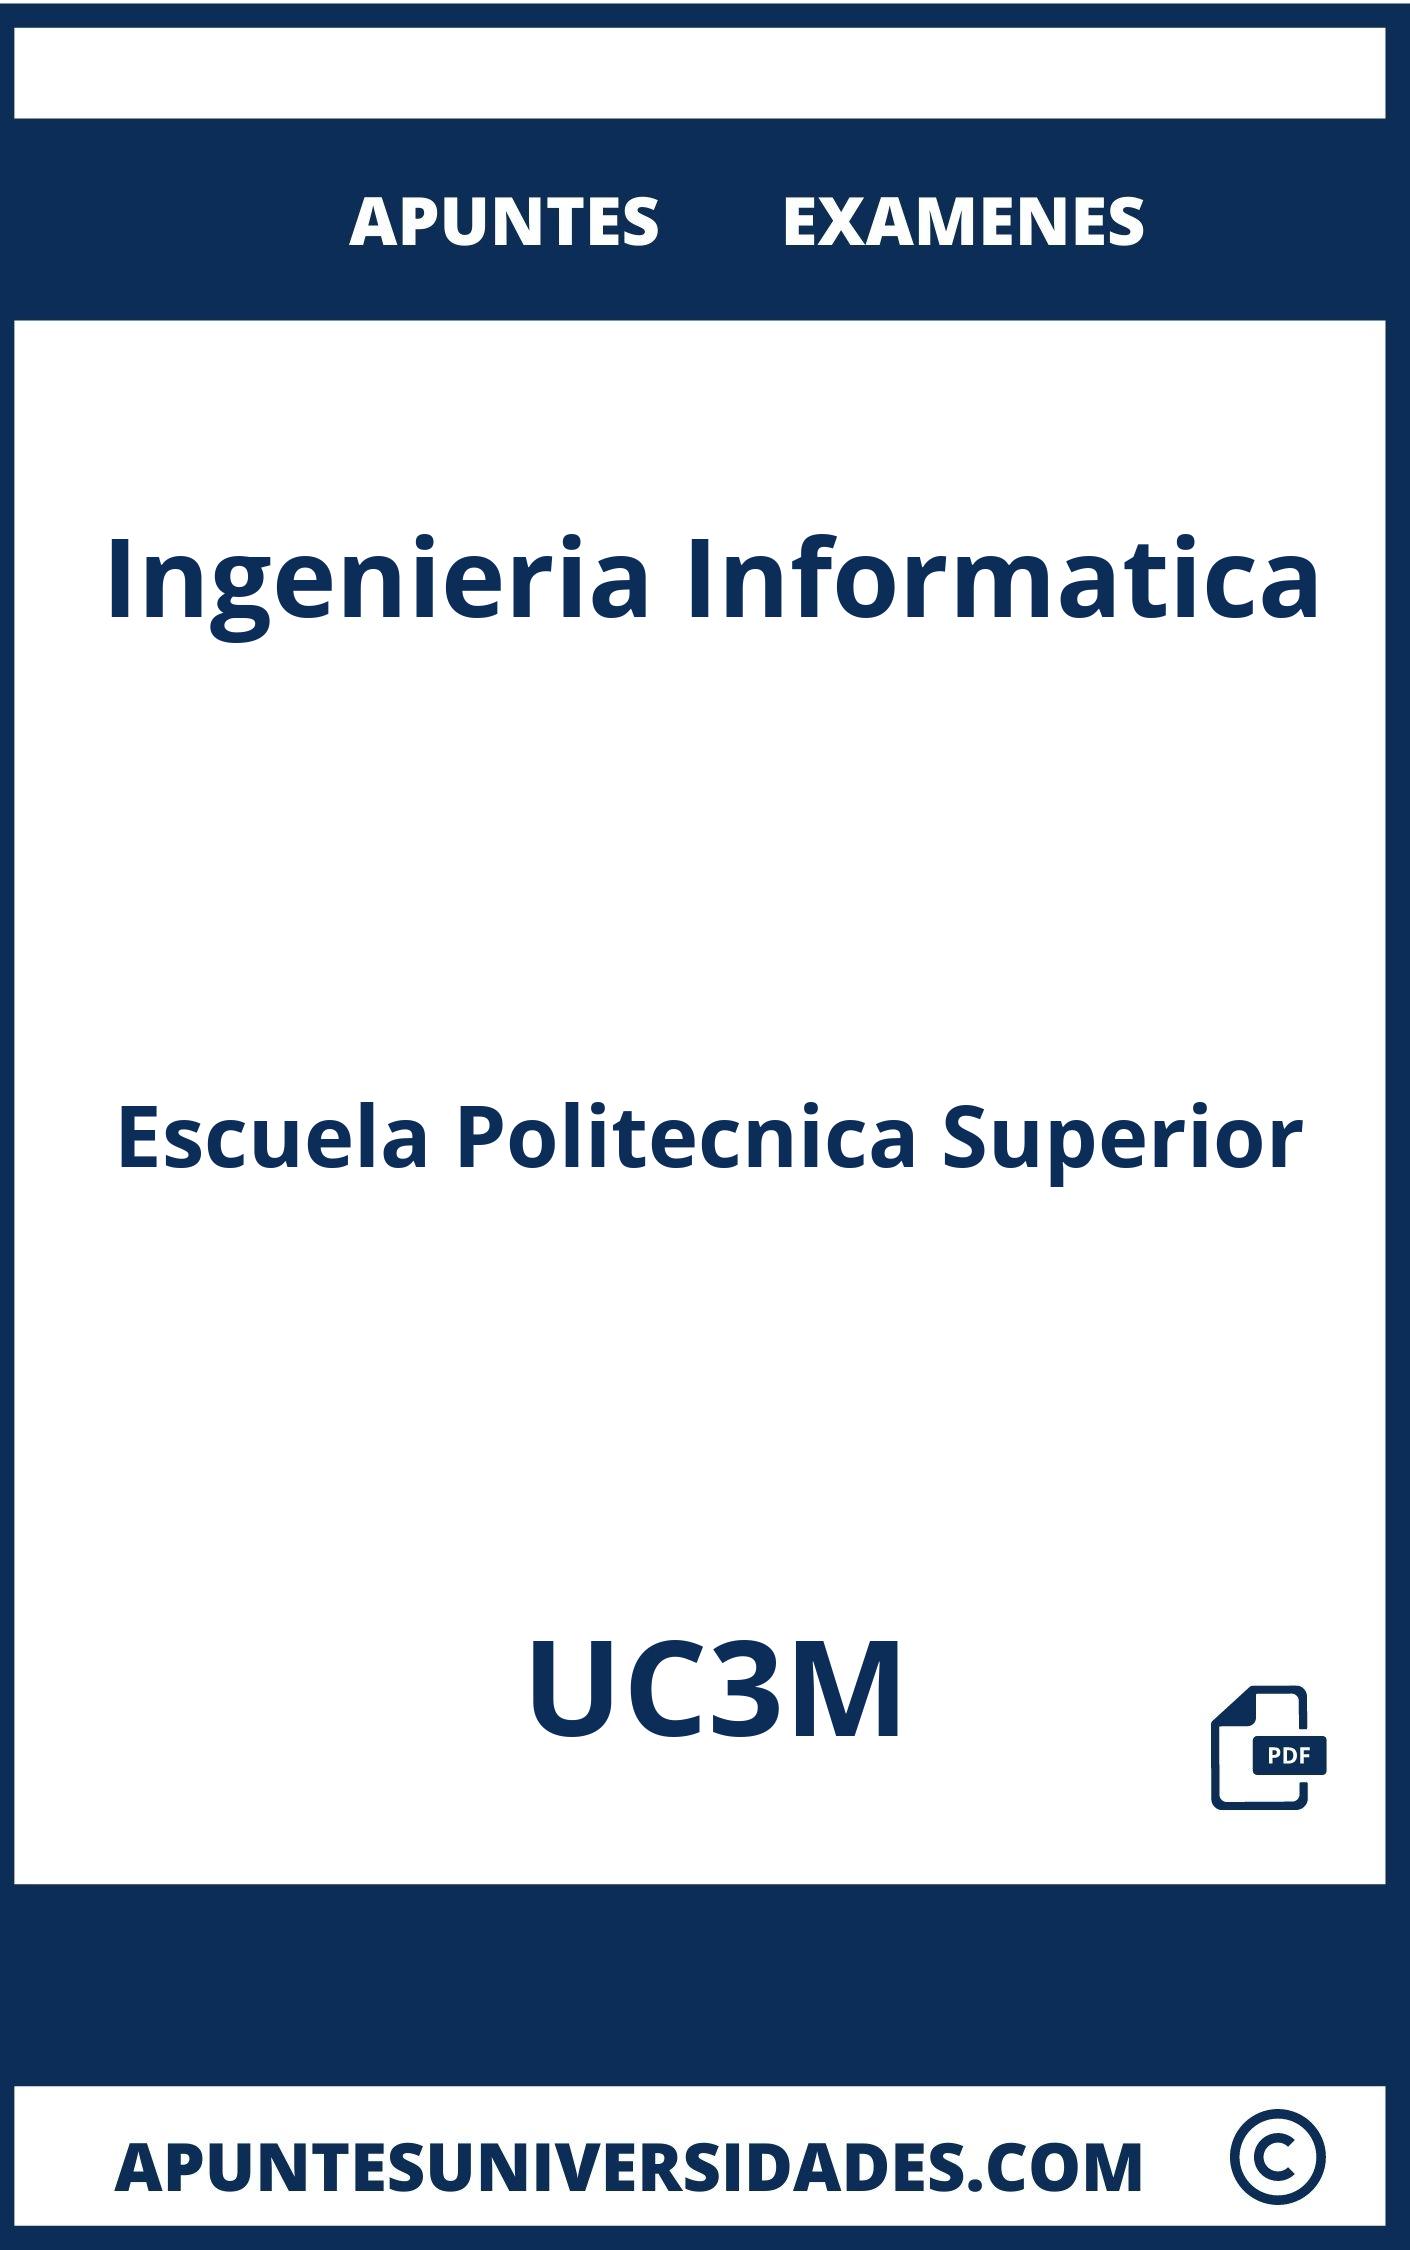 Apuntes Ingenieria Informatica UC3M y Examenes